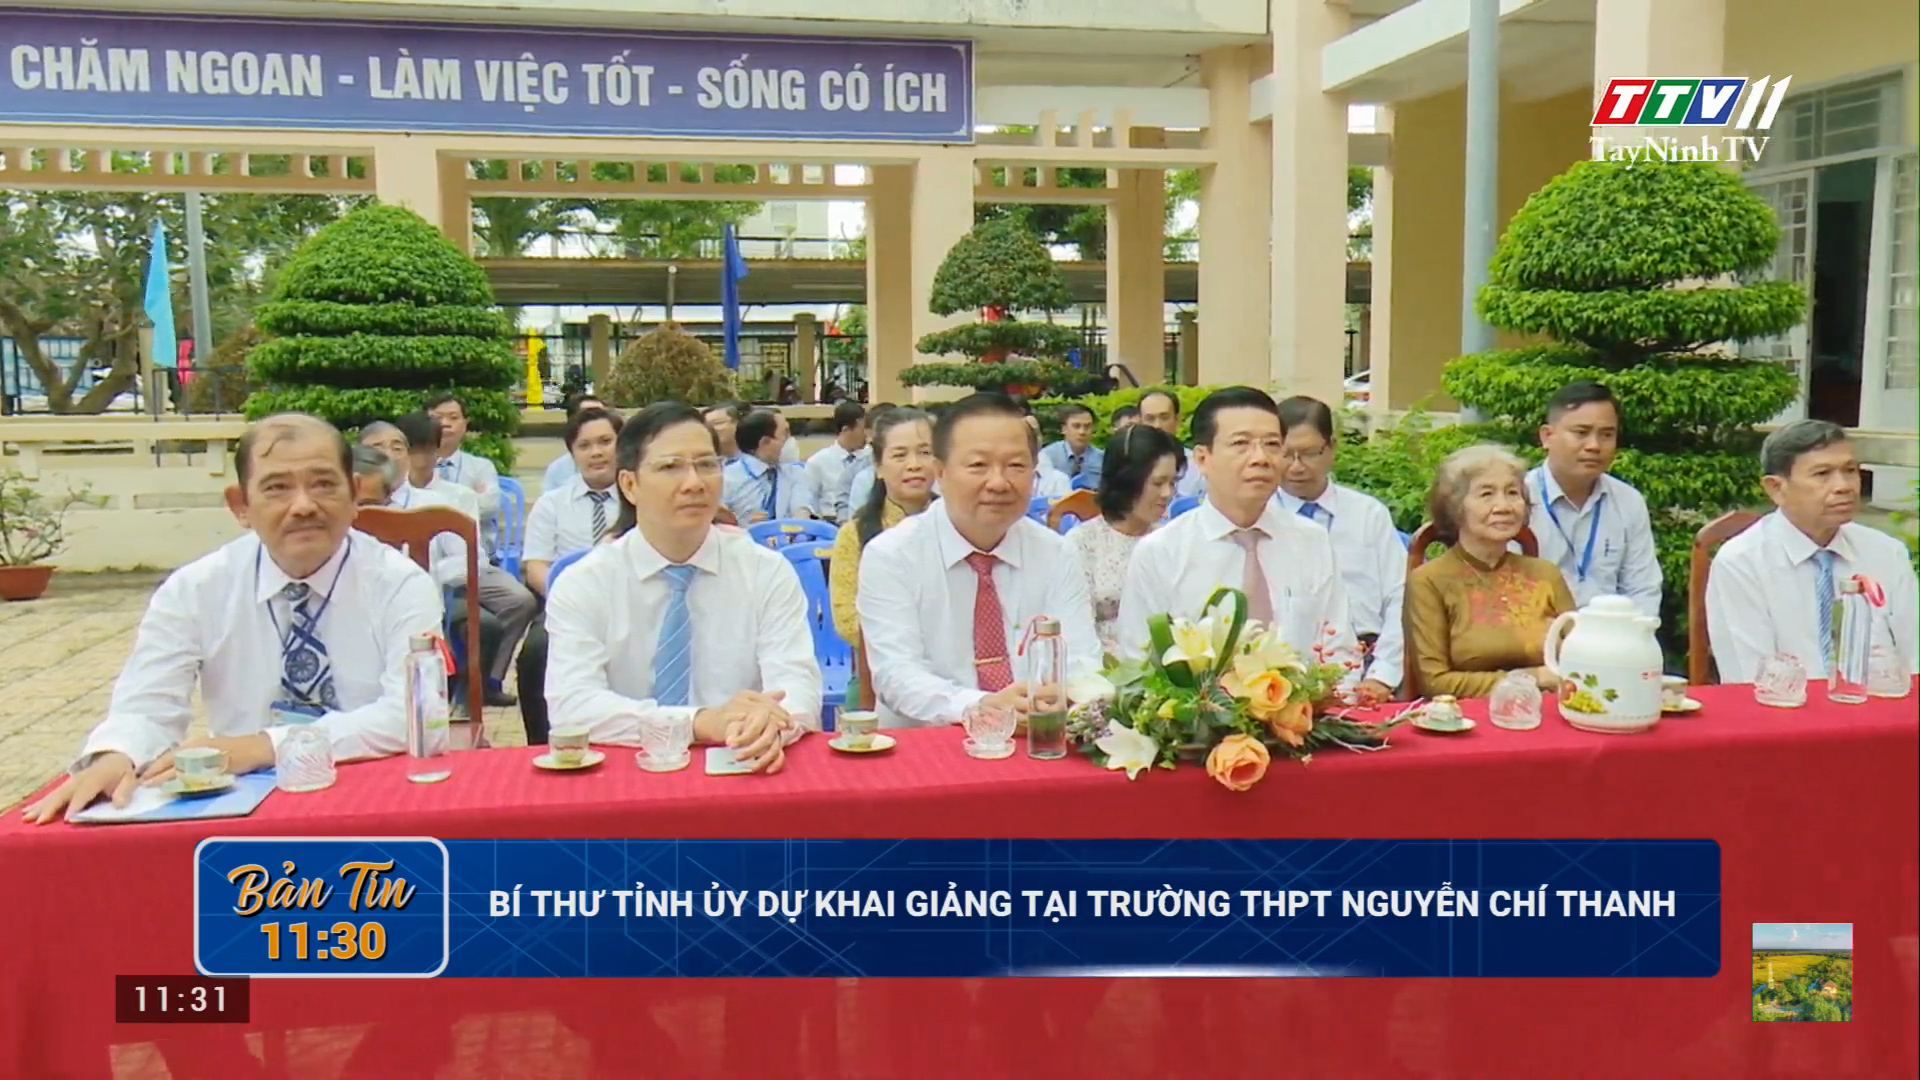 Bí thư Tỉnh ủy dự khai giảng tại trường THPT Nguyễn Chí Thanh | TayNinhTV